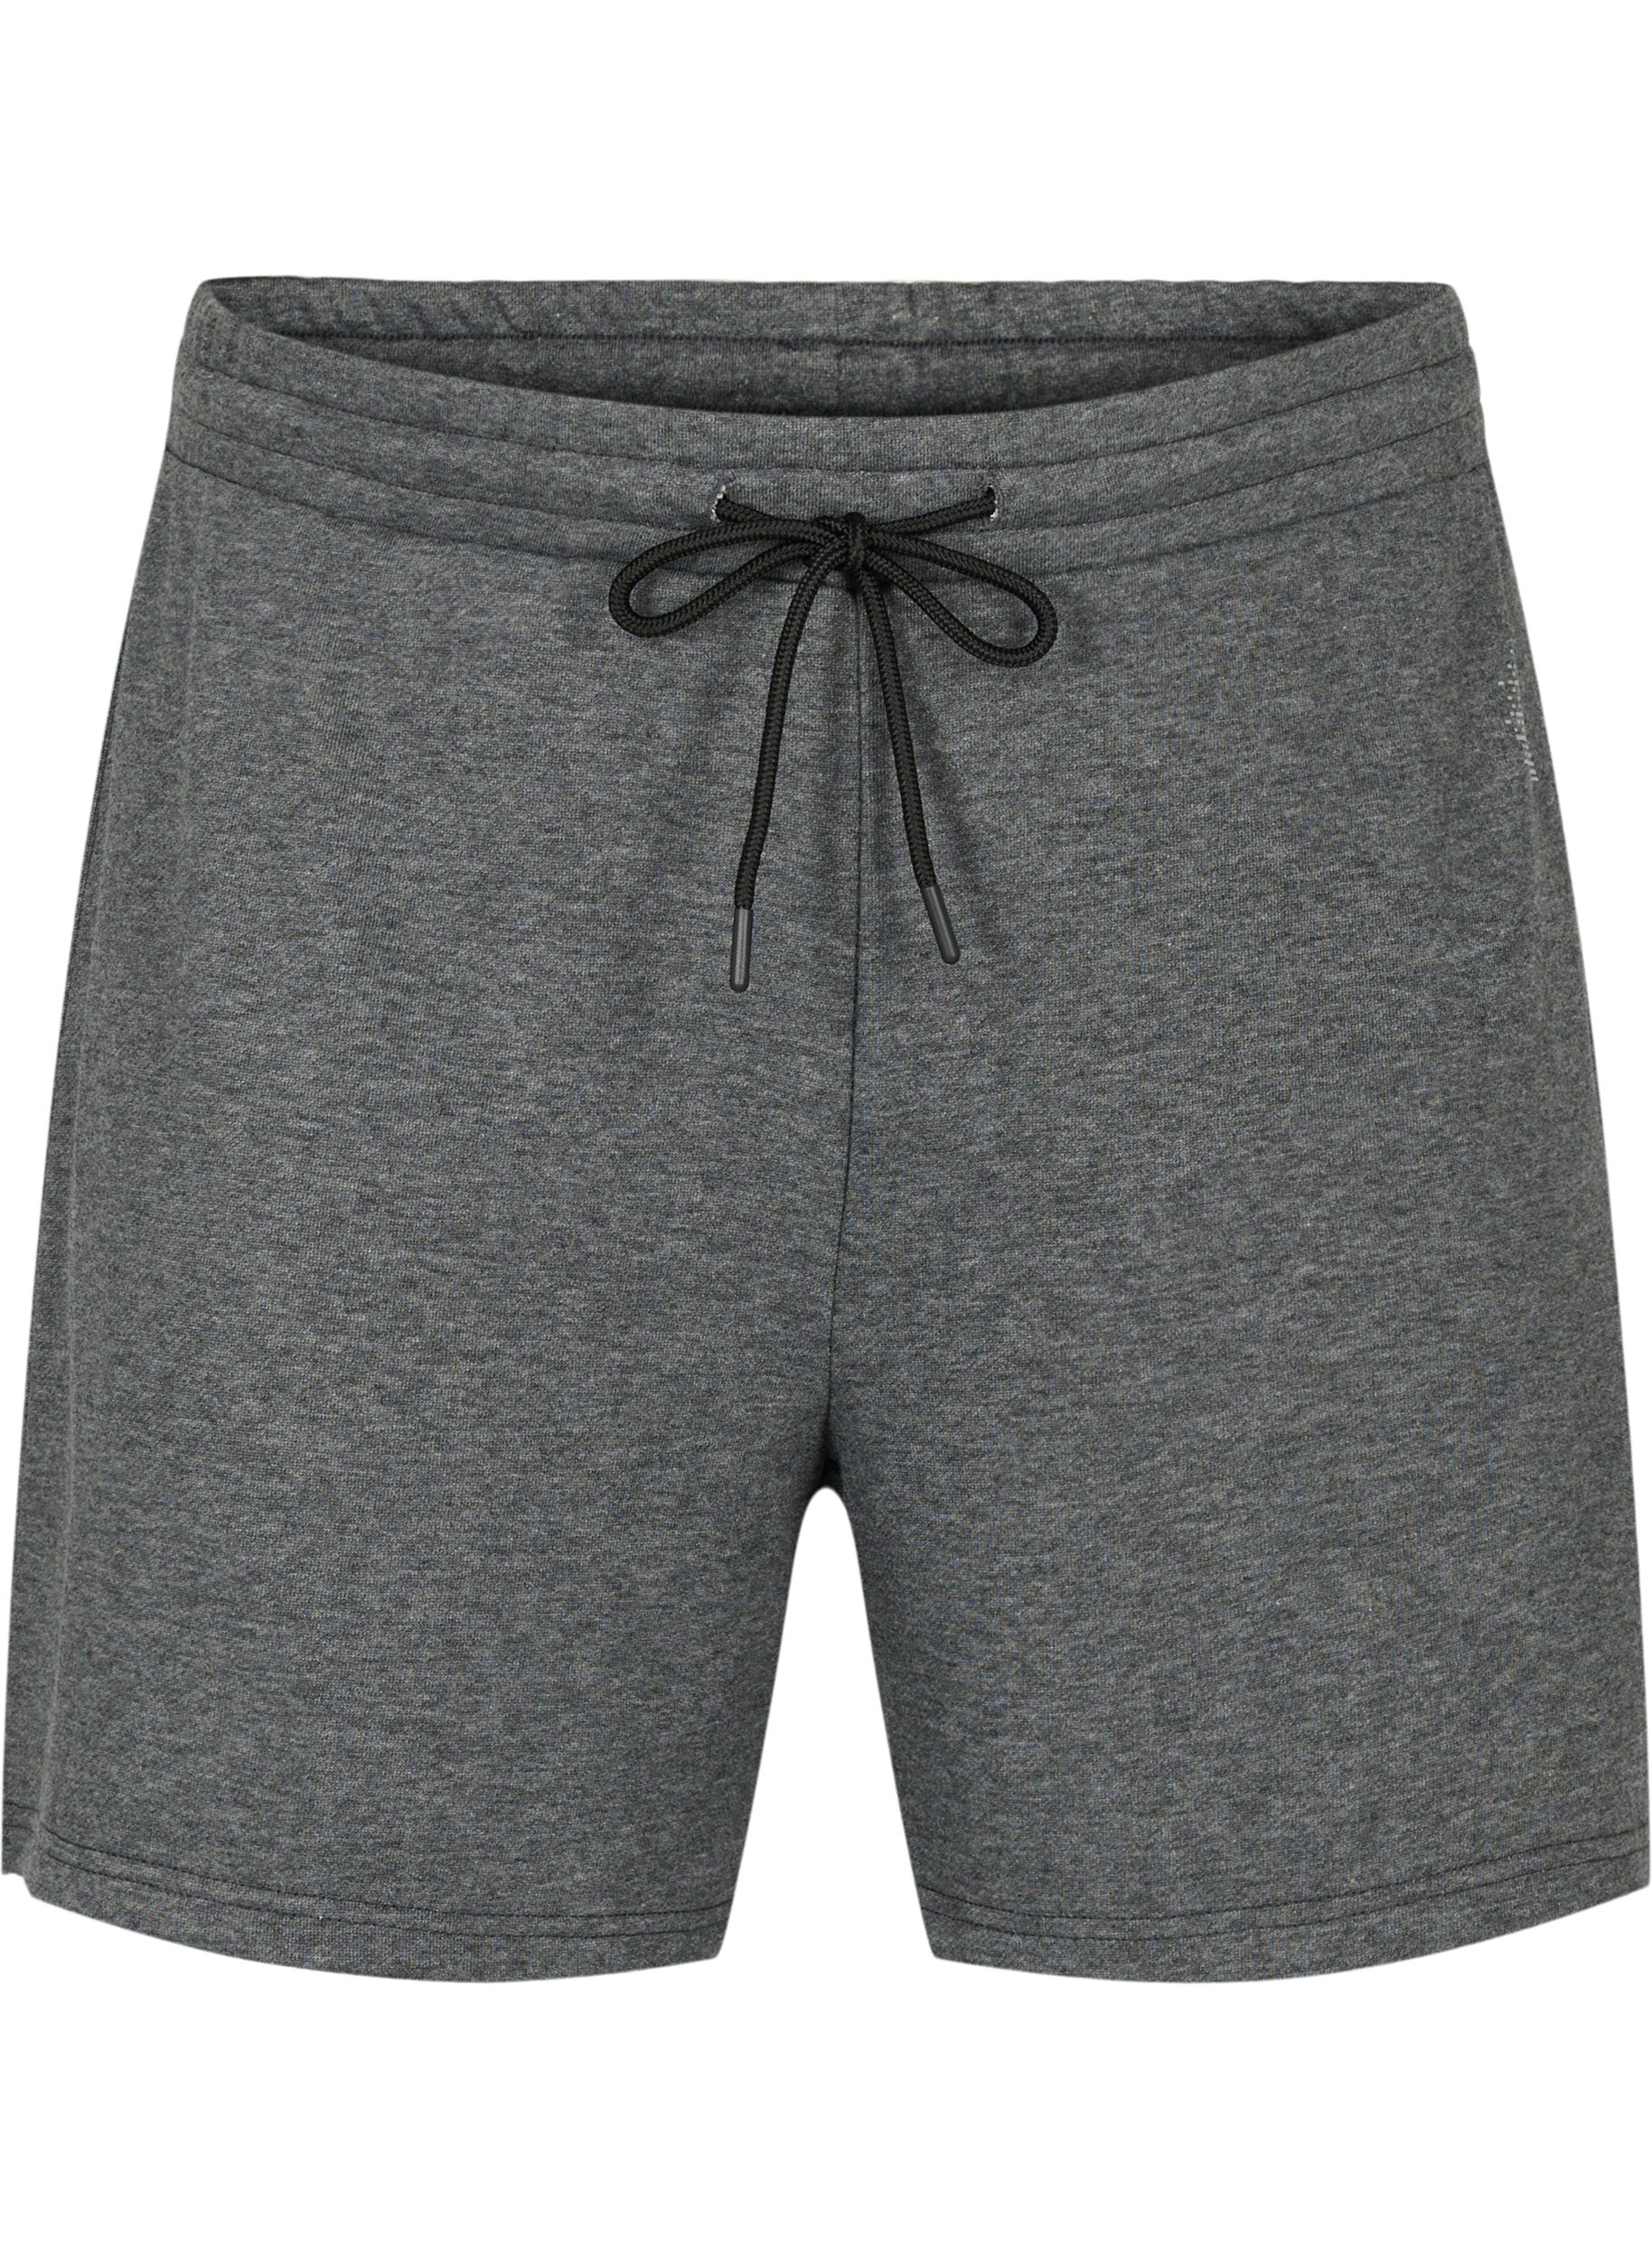 Freedom grey melange shorts